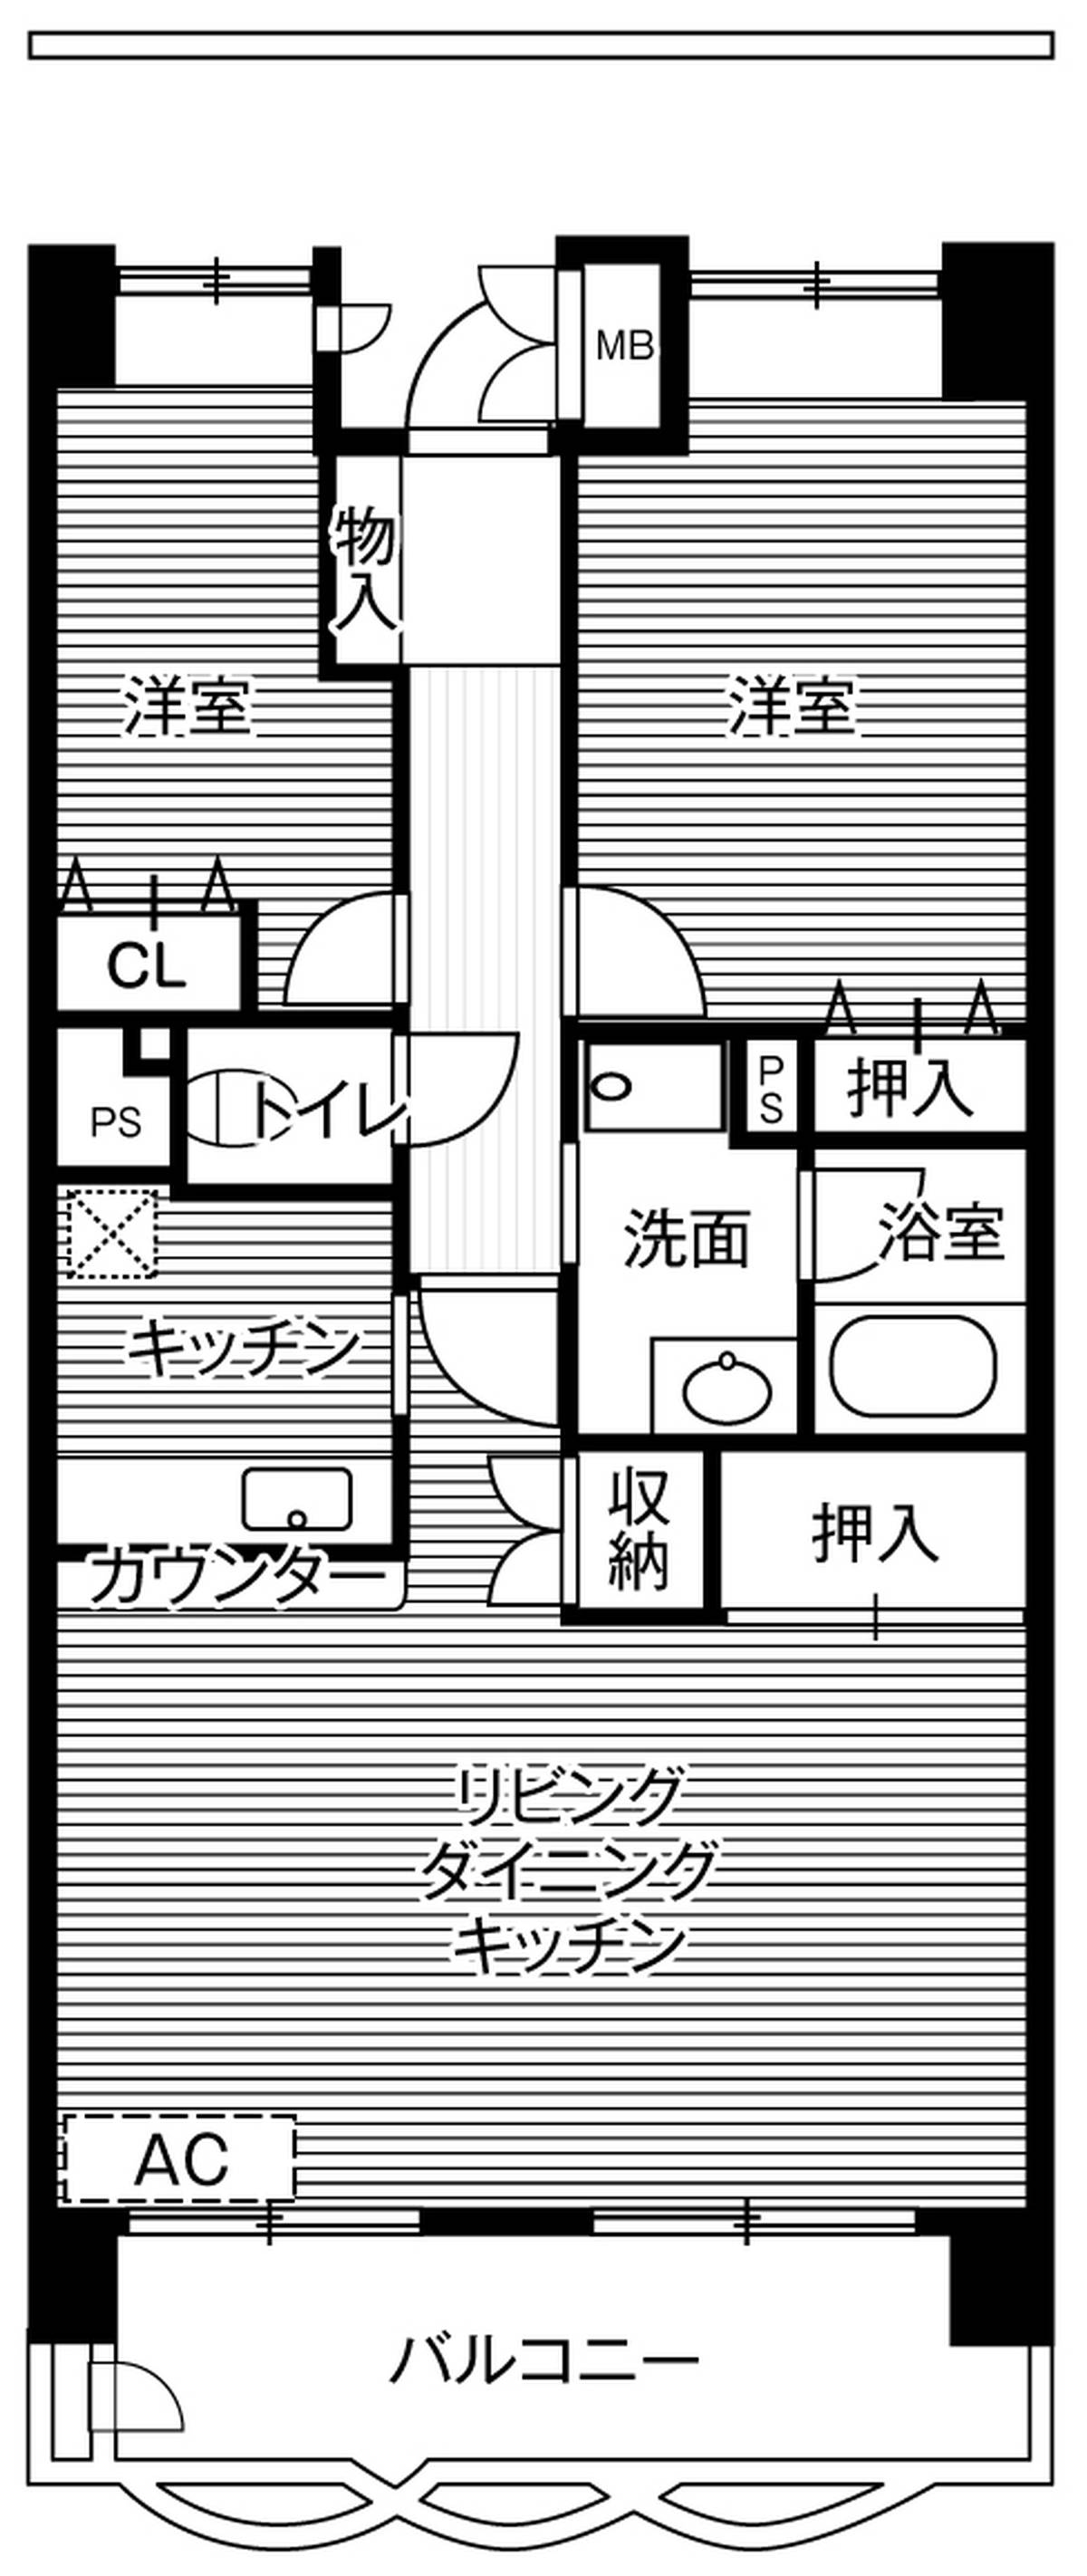 2LDK floorplan of Village House Higashi Matsuyama Tower in Higashimatsuyama-shi